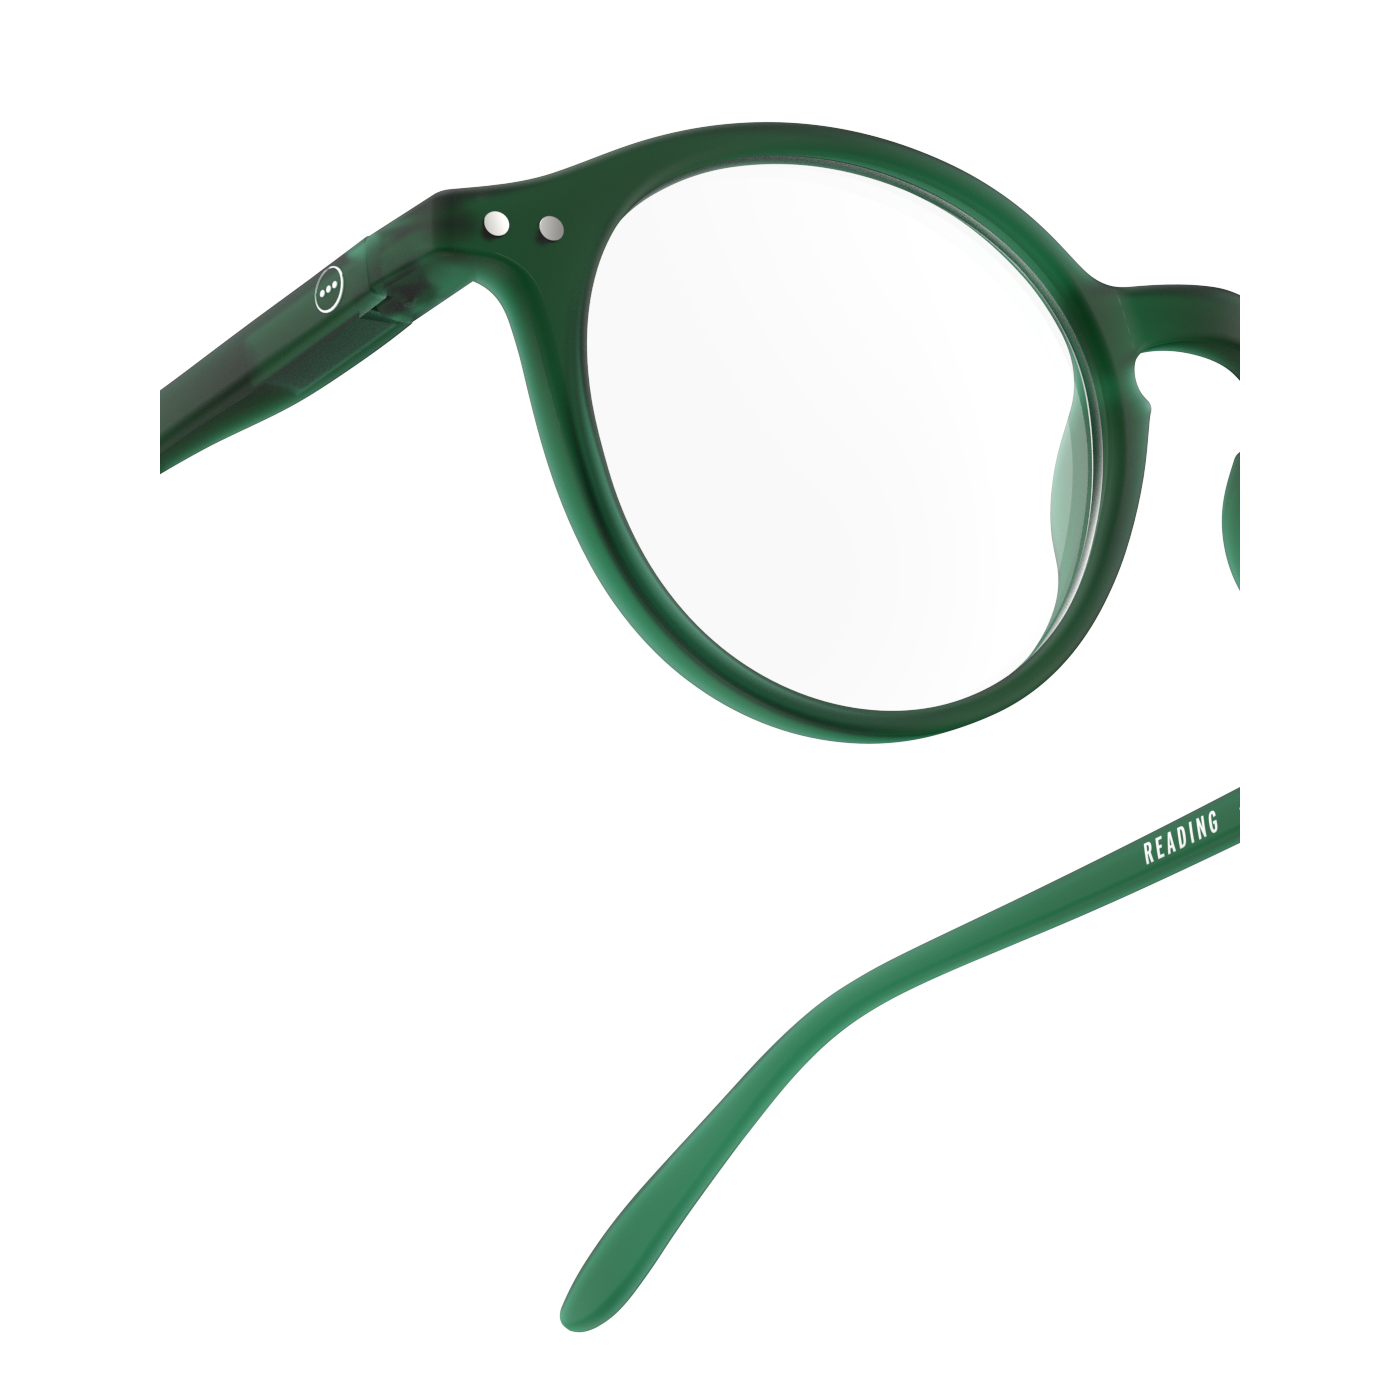 Izipizi #D green reading glasses